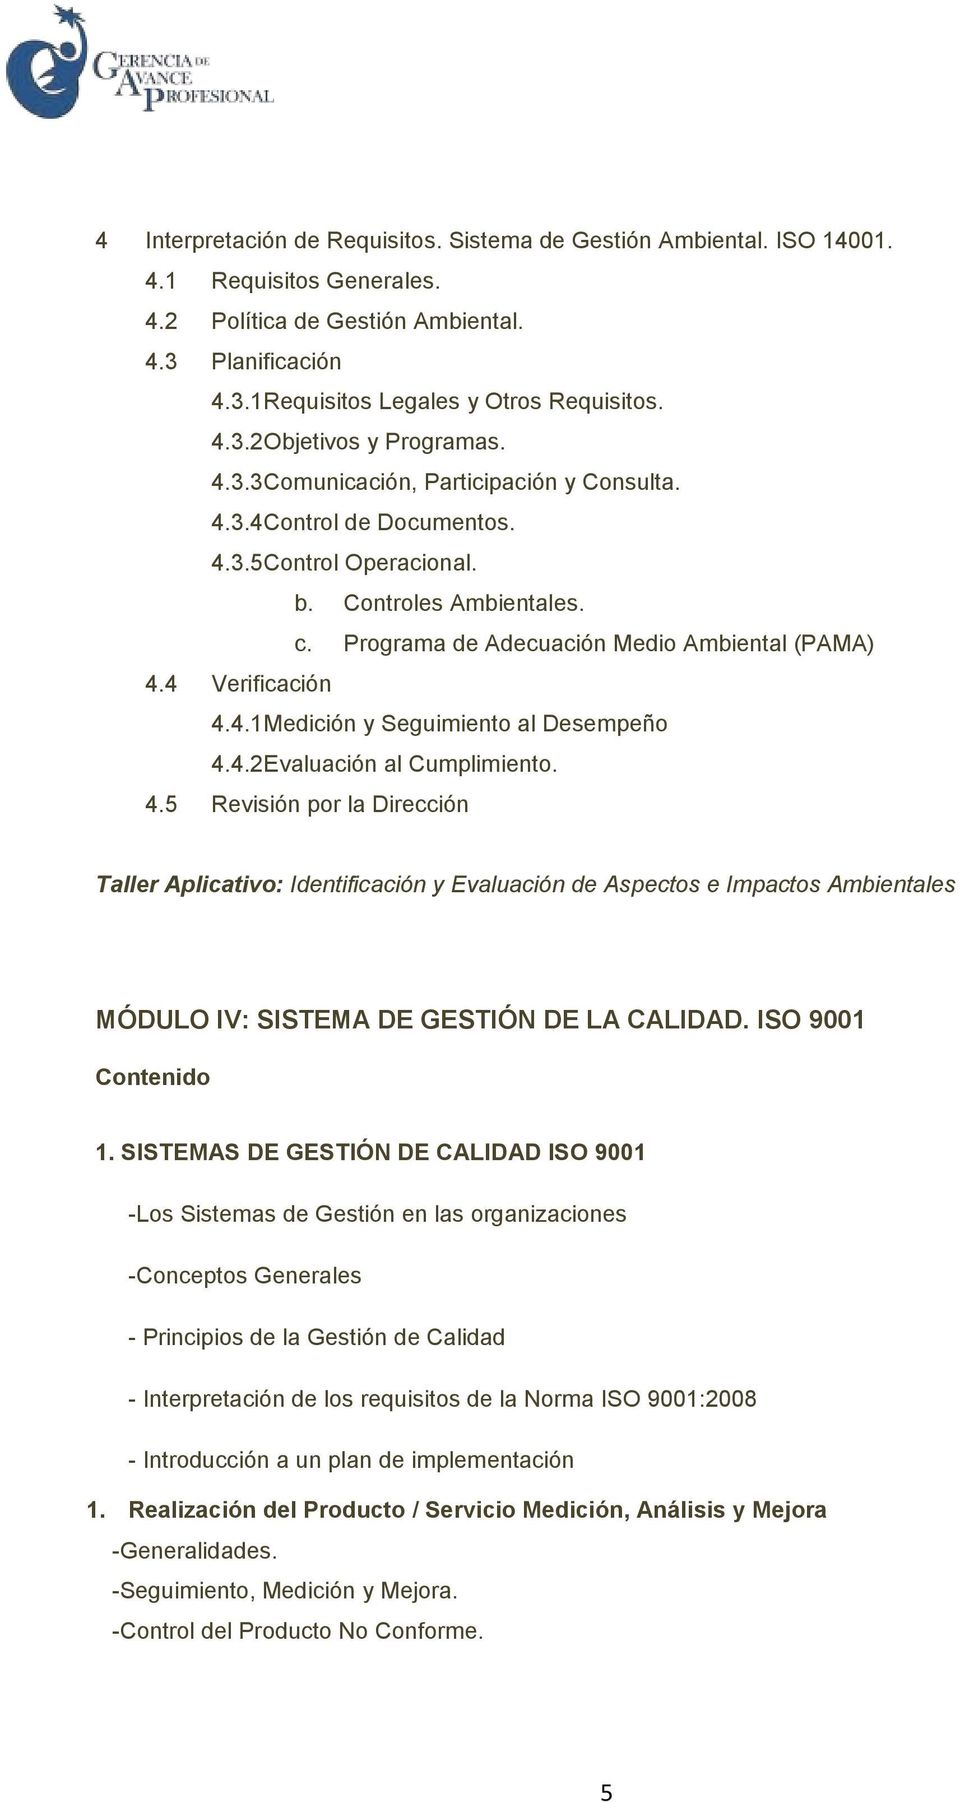 4.2 Evaluación al Cumplimiento. 4.5 Revisión por la Dirección Taller Aplicativo: Identificación y Evaluación de Aspectos e Impactos Ambientales MÓDULO IV: SISTEMA DE GESTIÓN DE LA CALIDAD. ISO 9001 1.